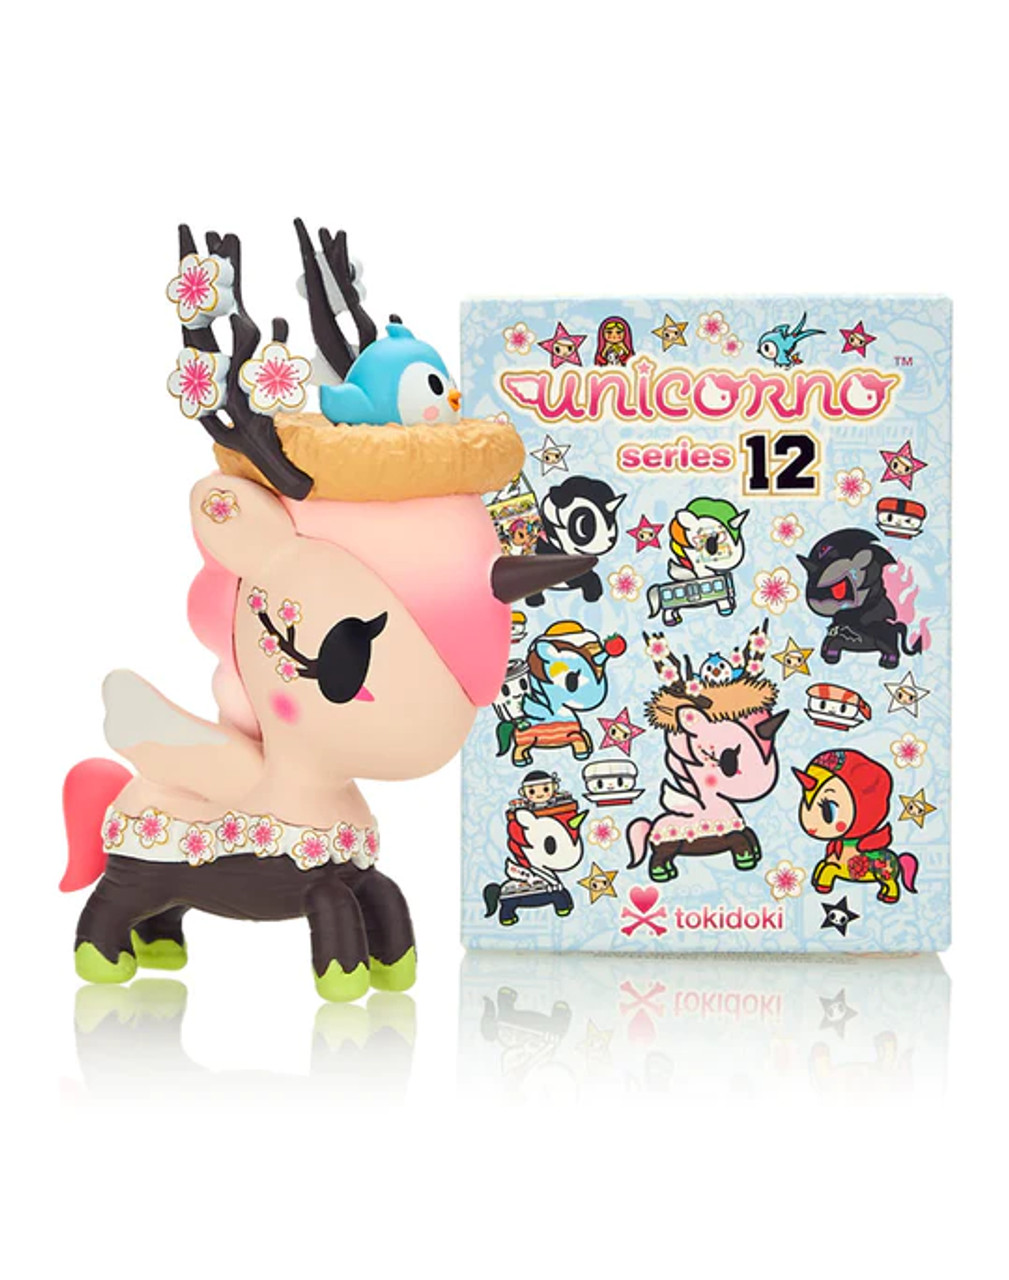 Aurora Medium Bellina tokidoki Enchanting Stuffed Animal Pink 10